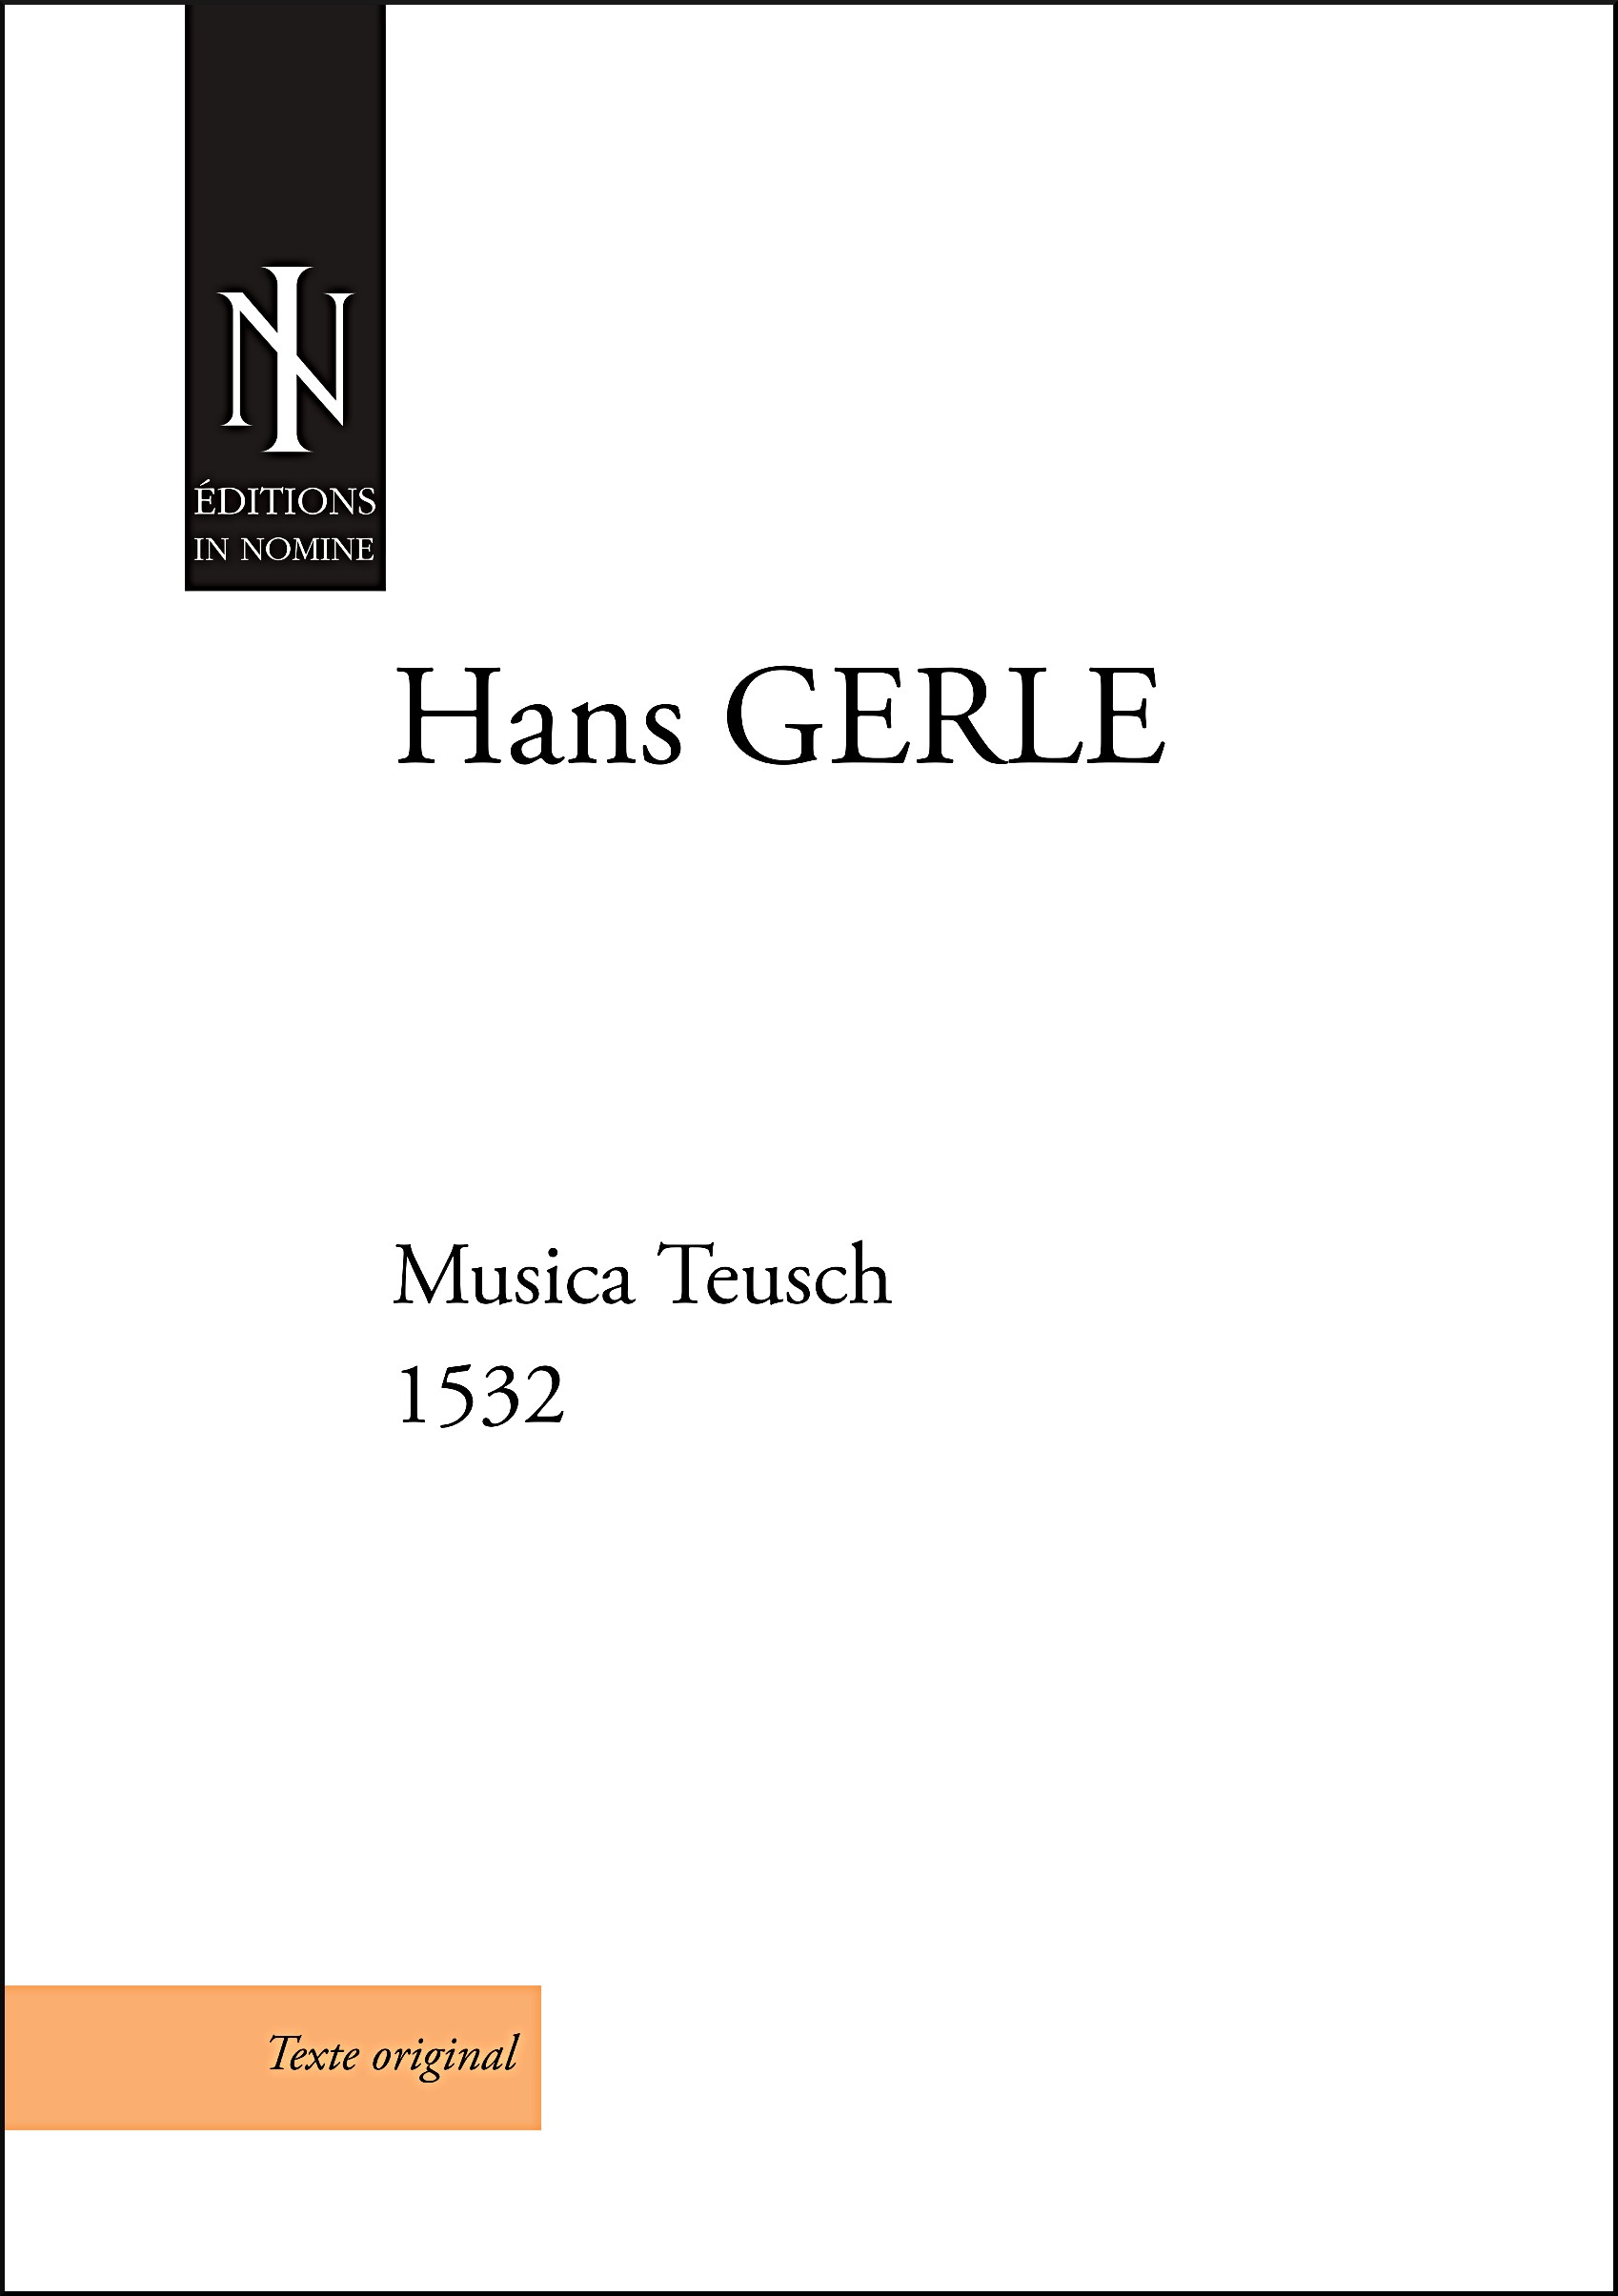 Musica Teusch (1532) (GERLE HANS)